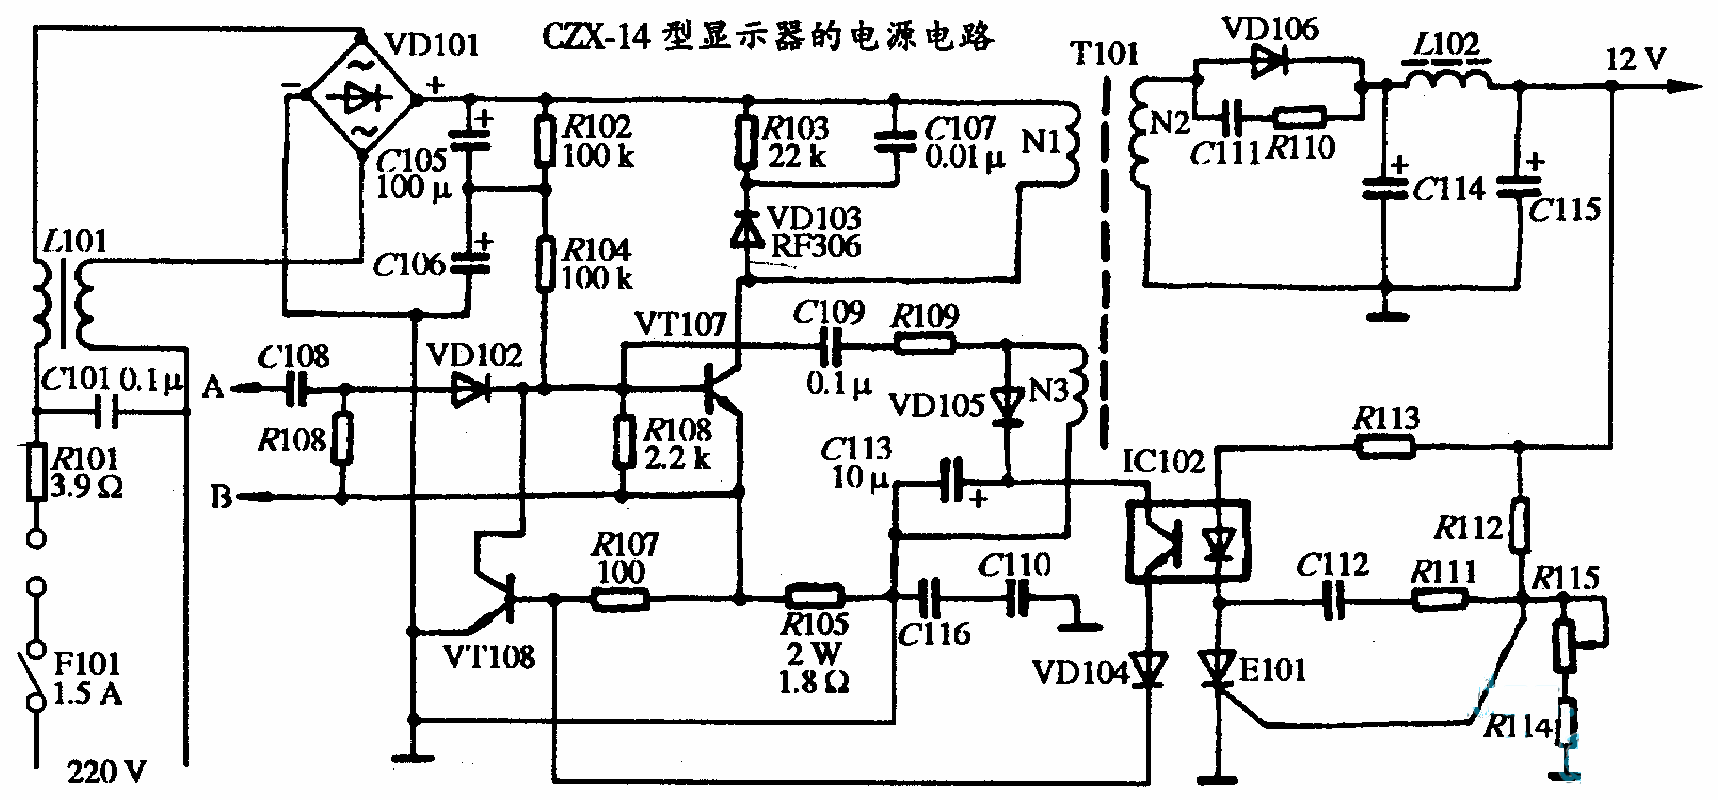 CZX-14型显示器的电源电路图